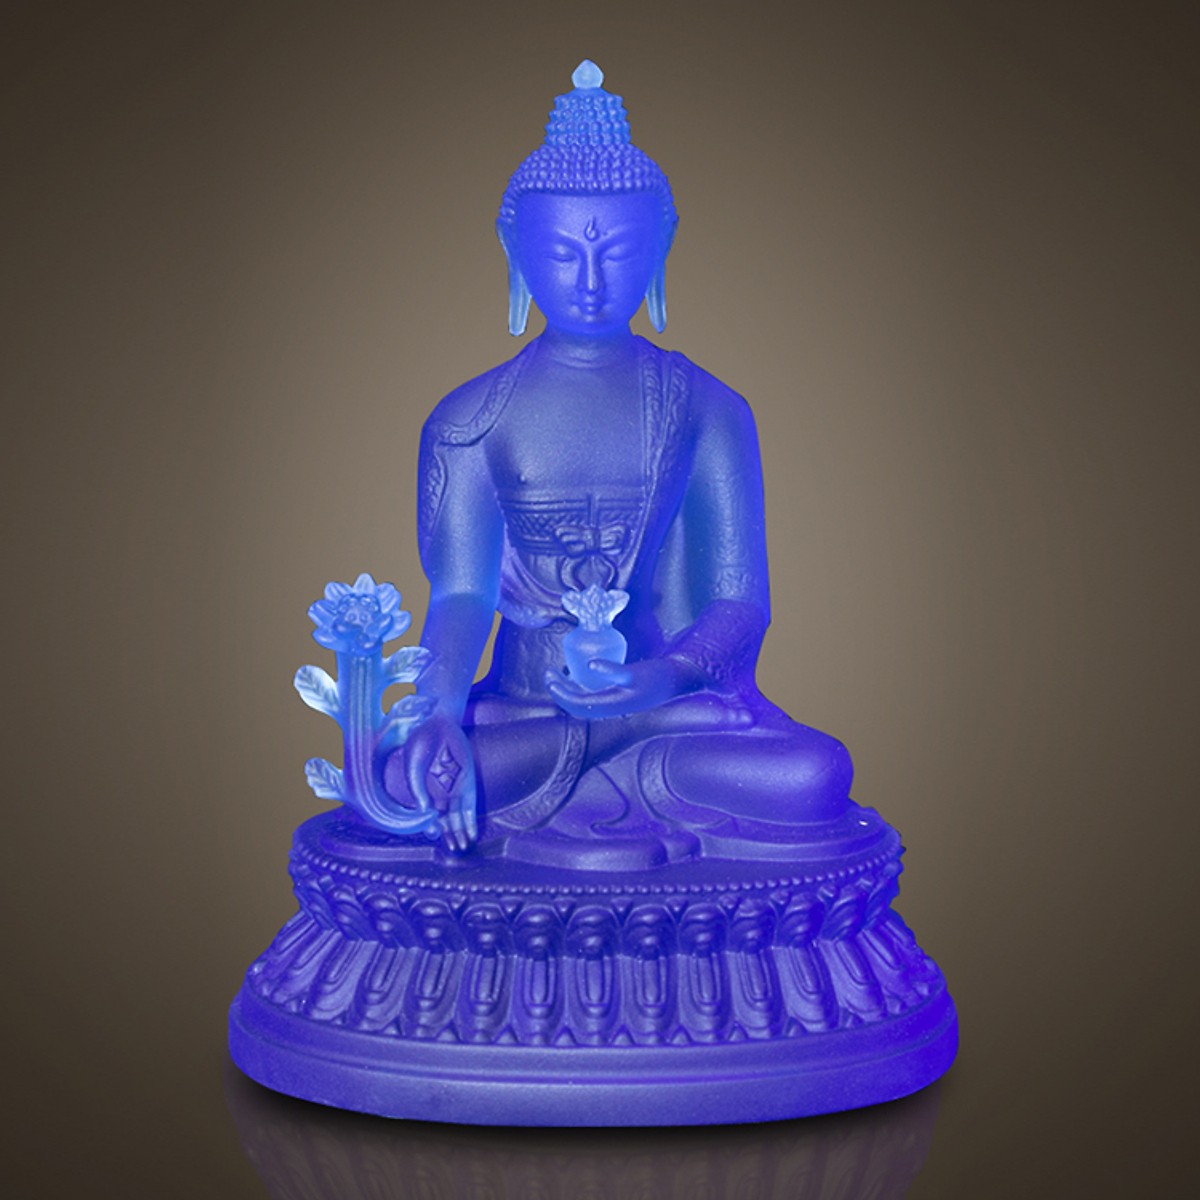 Tượng Phật Dược Sư Lưu Ly Xanh Dương: Với thiết kế đặc biệt từ các nghệ nhân tài ba, tượng Phật Dược Sư Lưu Ly Xanh Dương mang đến sự bình an và tài lộc cho người sở hữu. Với kích thước và độ chi tiết hoàn hảo, tượng trở thành một sản phẩm nghệ thuật độc đáo và thu hút sự chú ý của nhiều người.